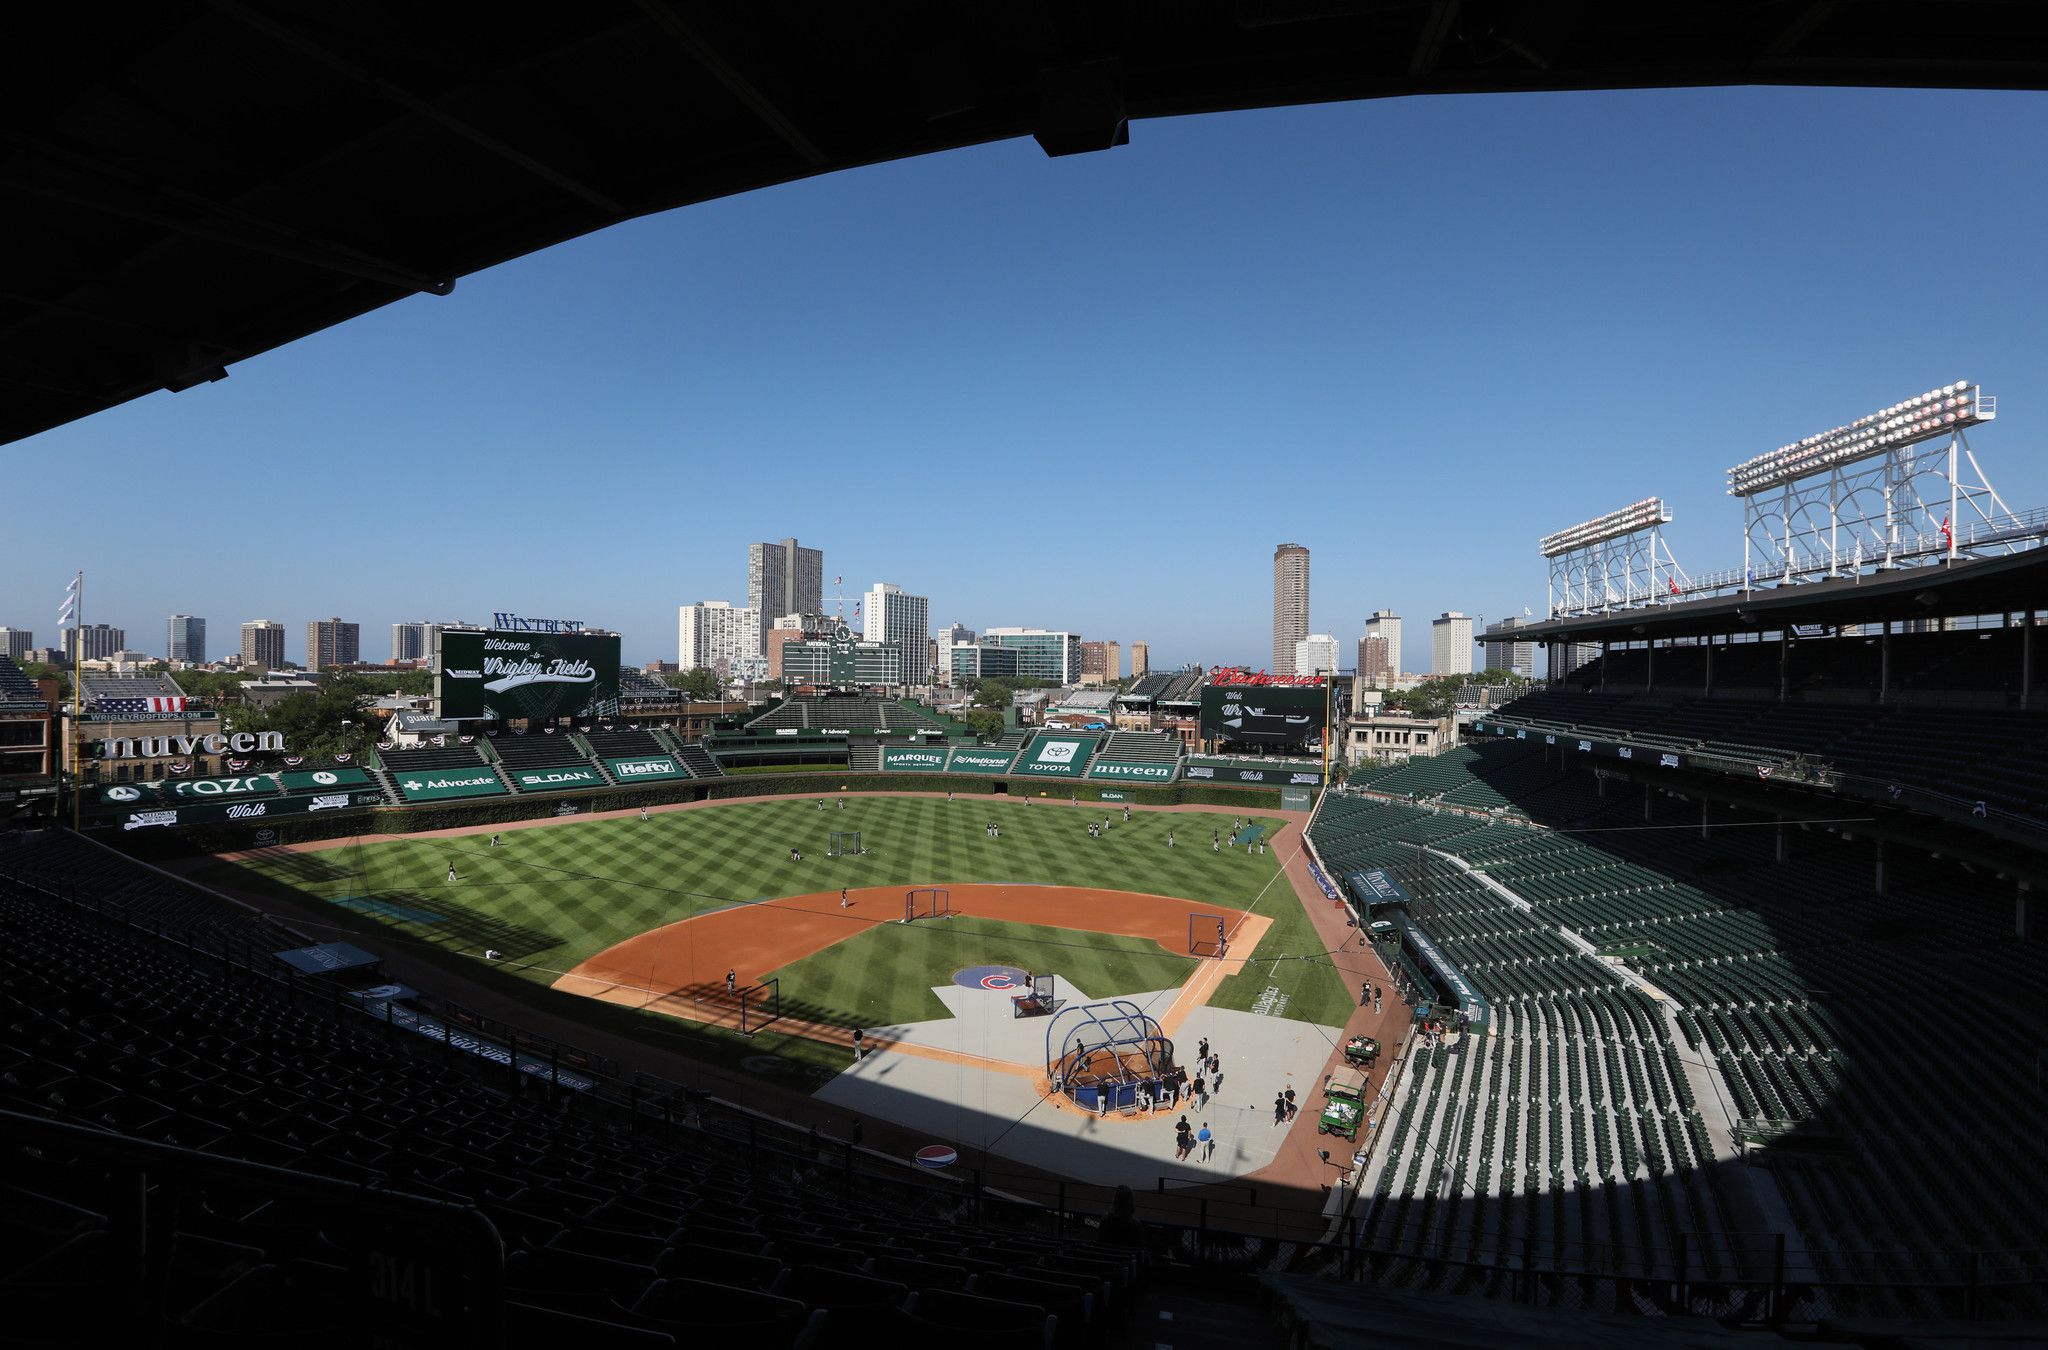 A Dodgers fan travel guide to Wrigley Field in Chicago - True Blue LA